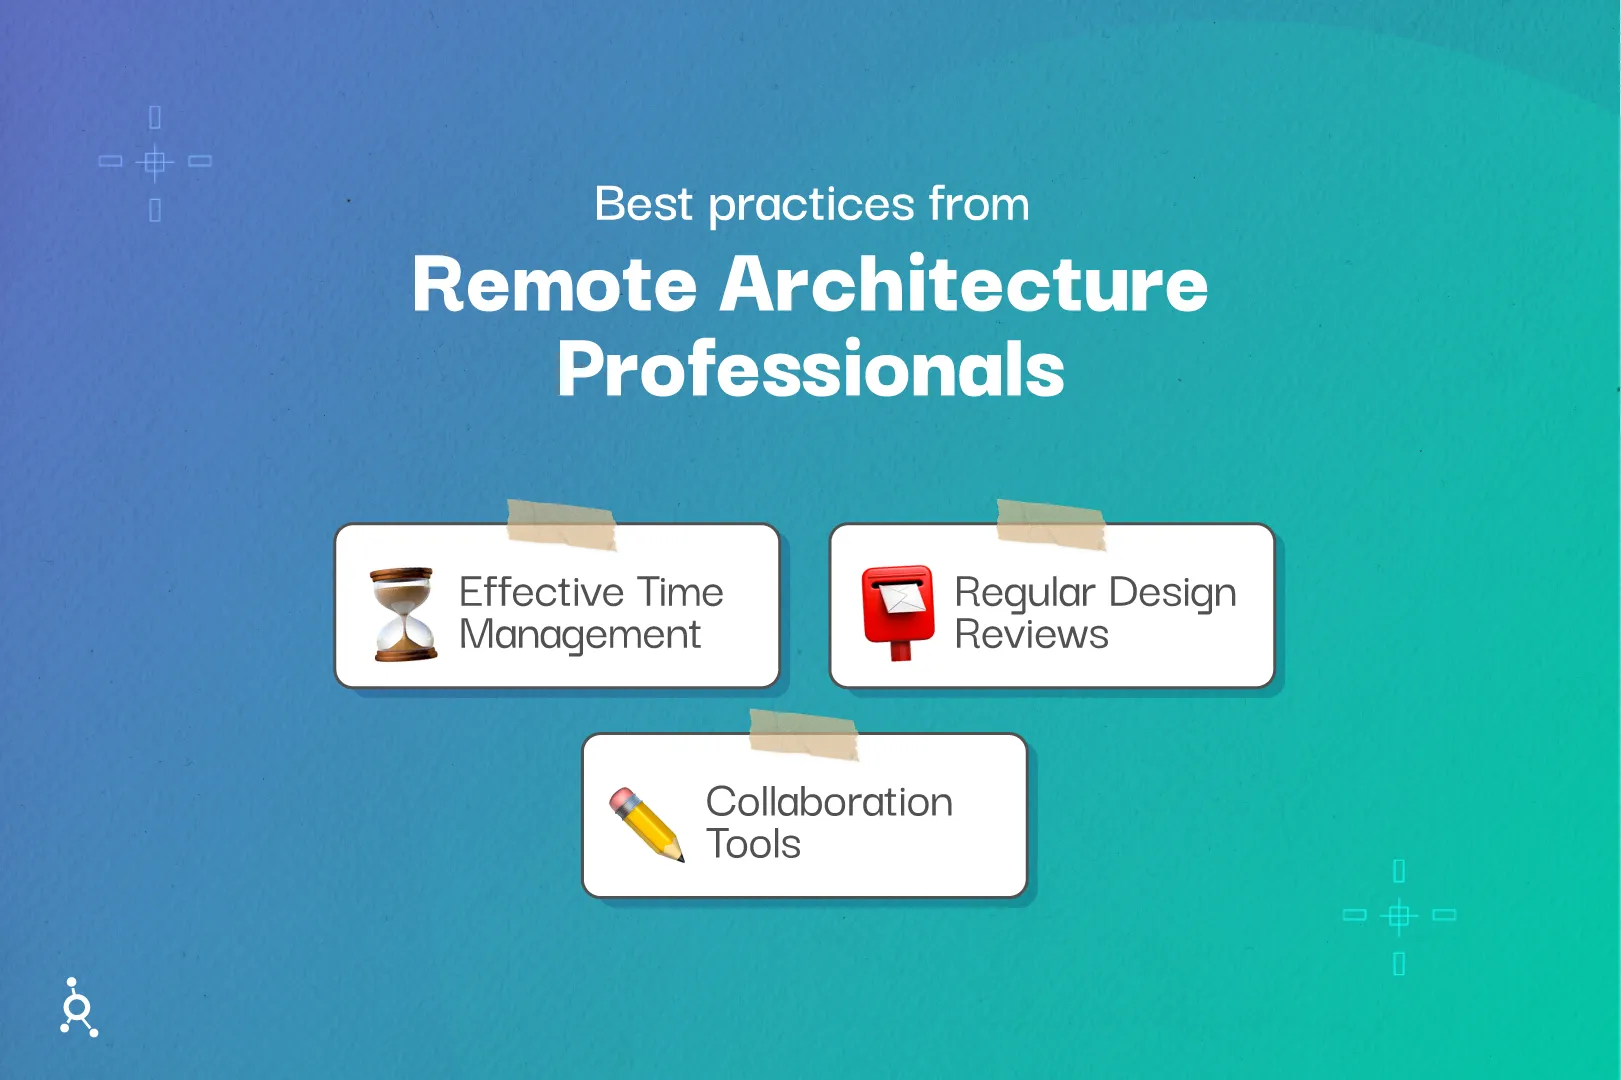 Remote Architecture Professionals